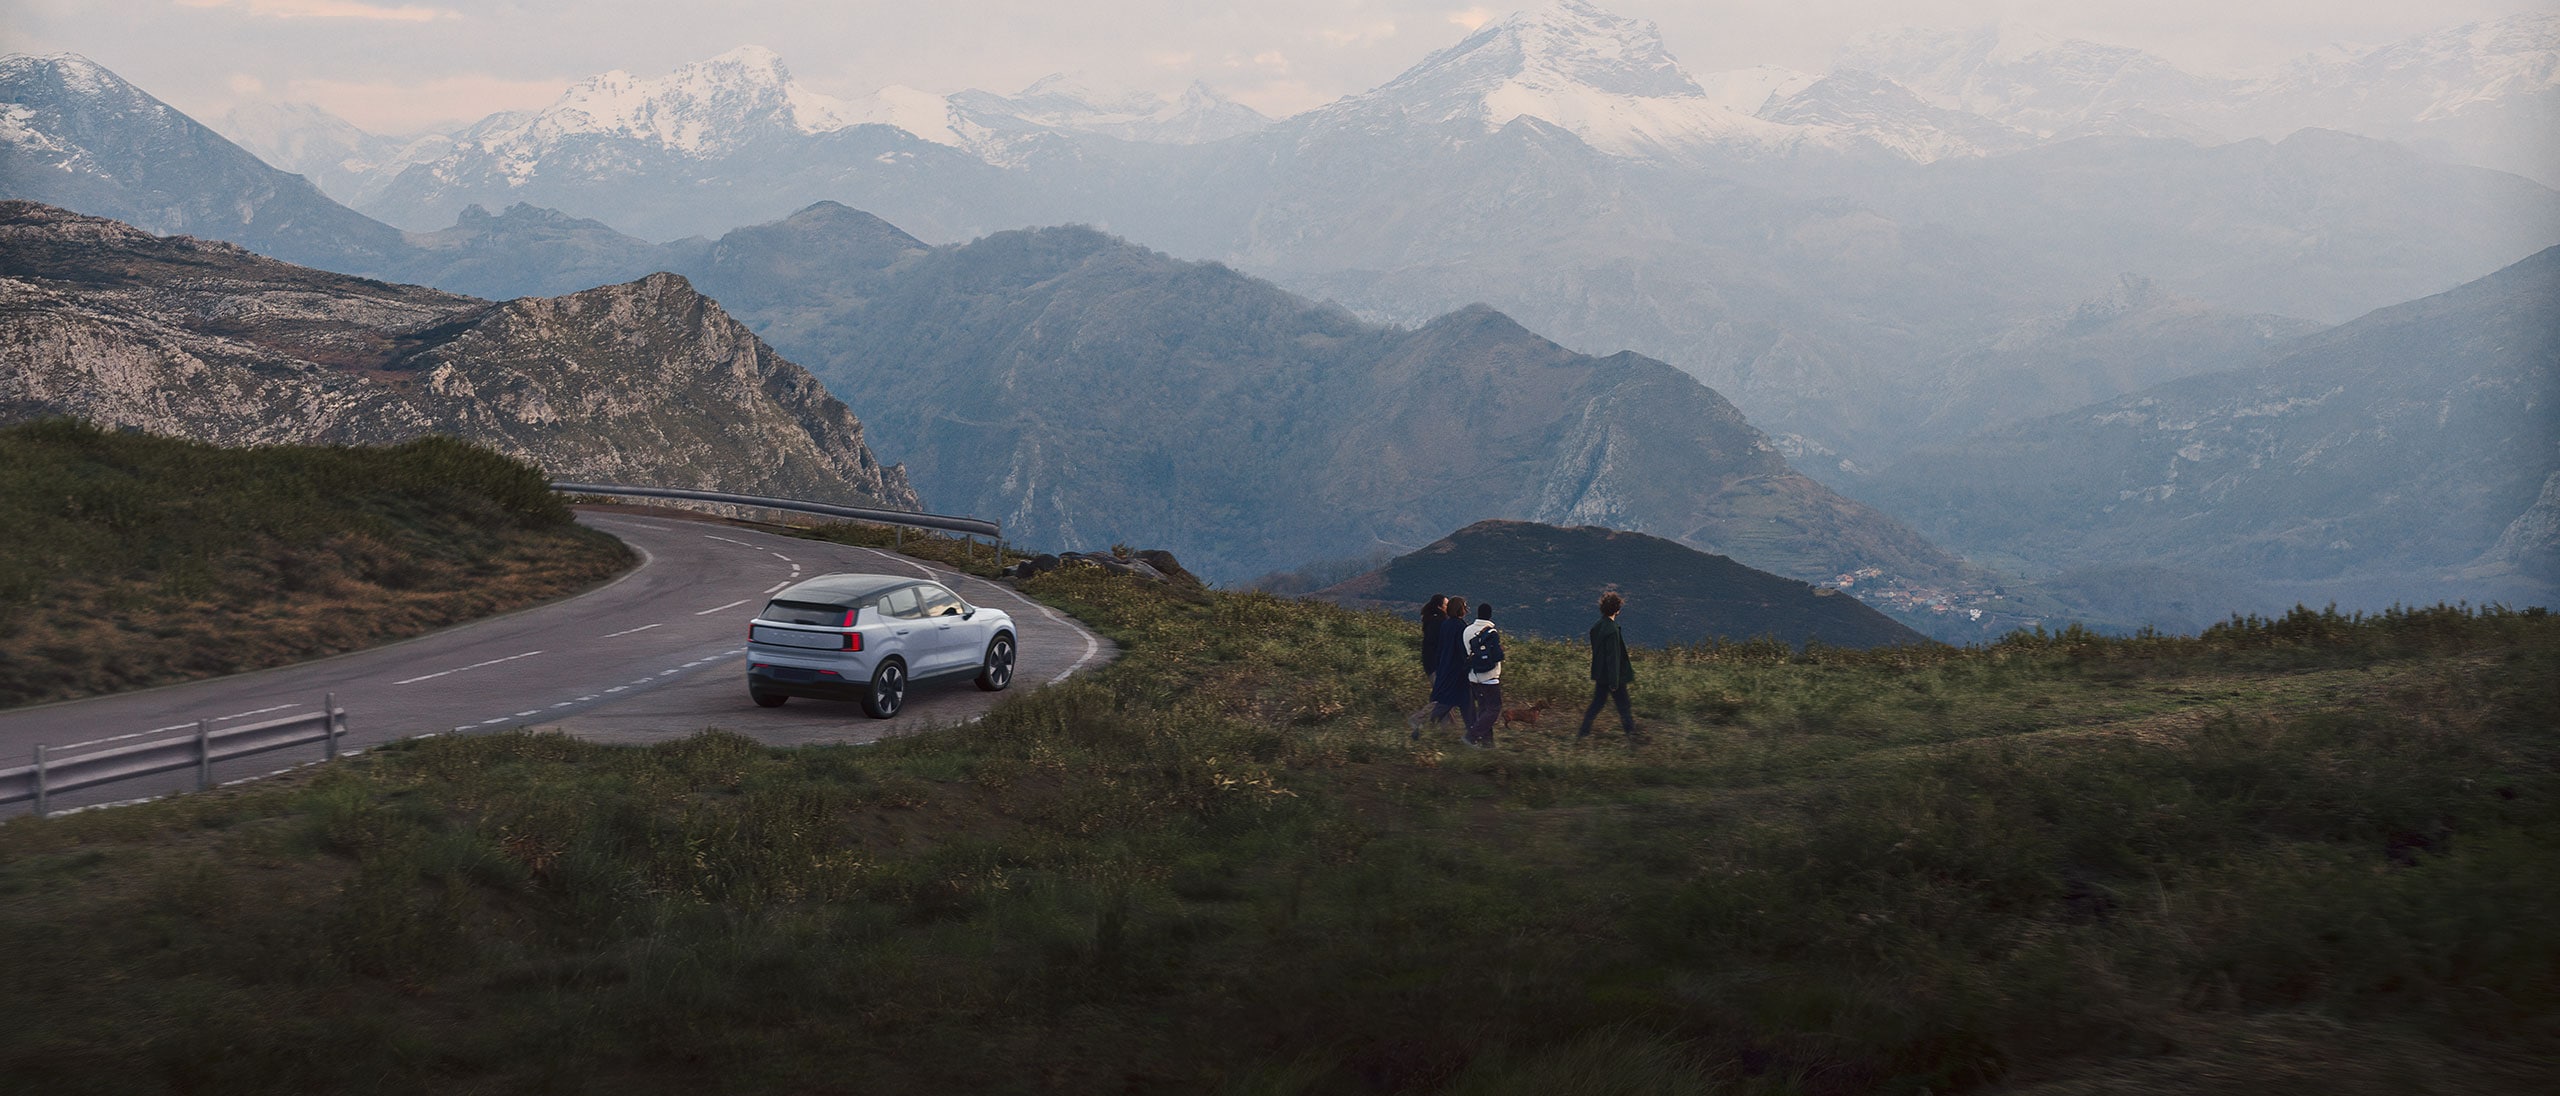 En fuldelektrisk Volvo-bil er parkeret ved siden af et smukt bjerglandskab.